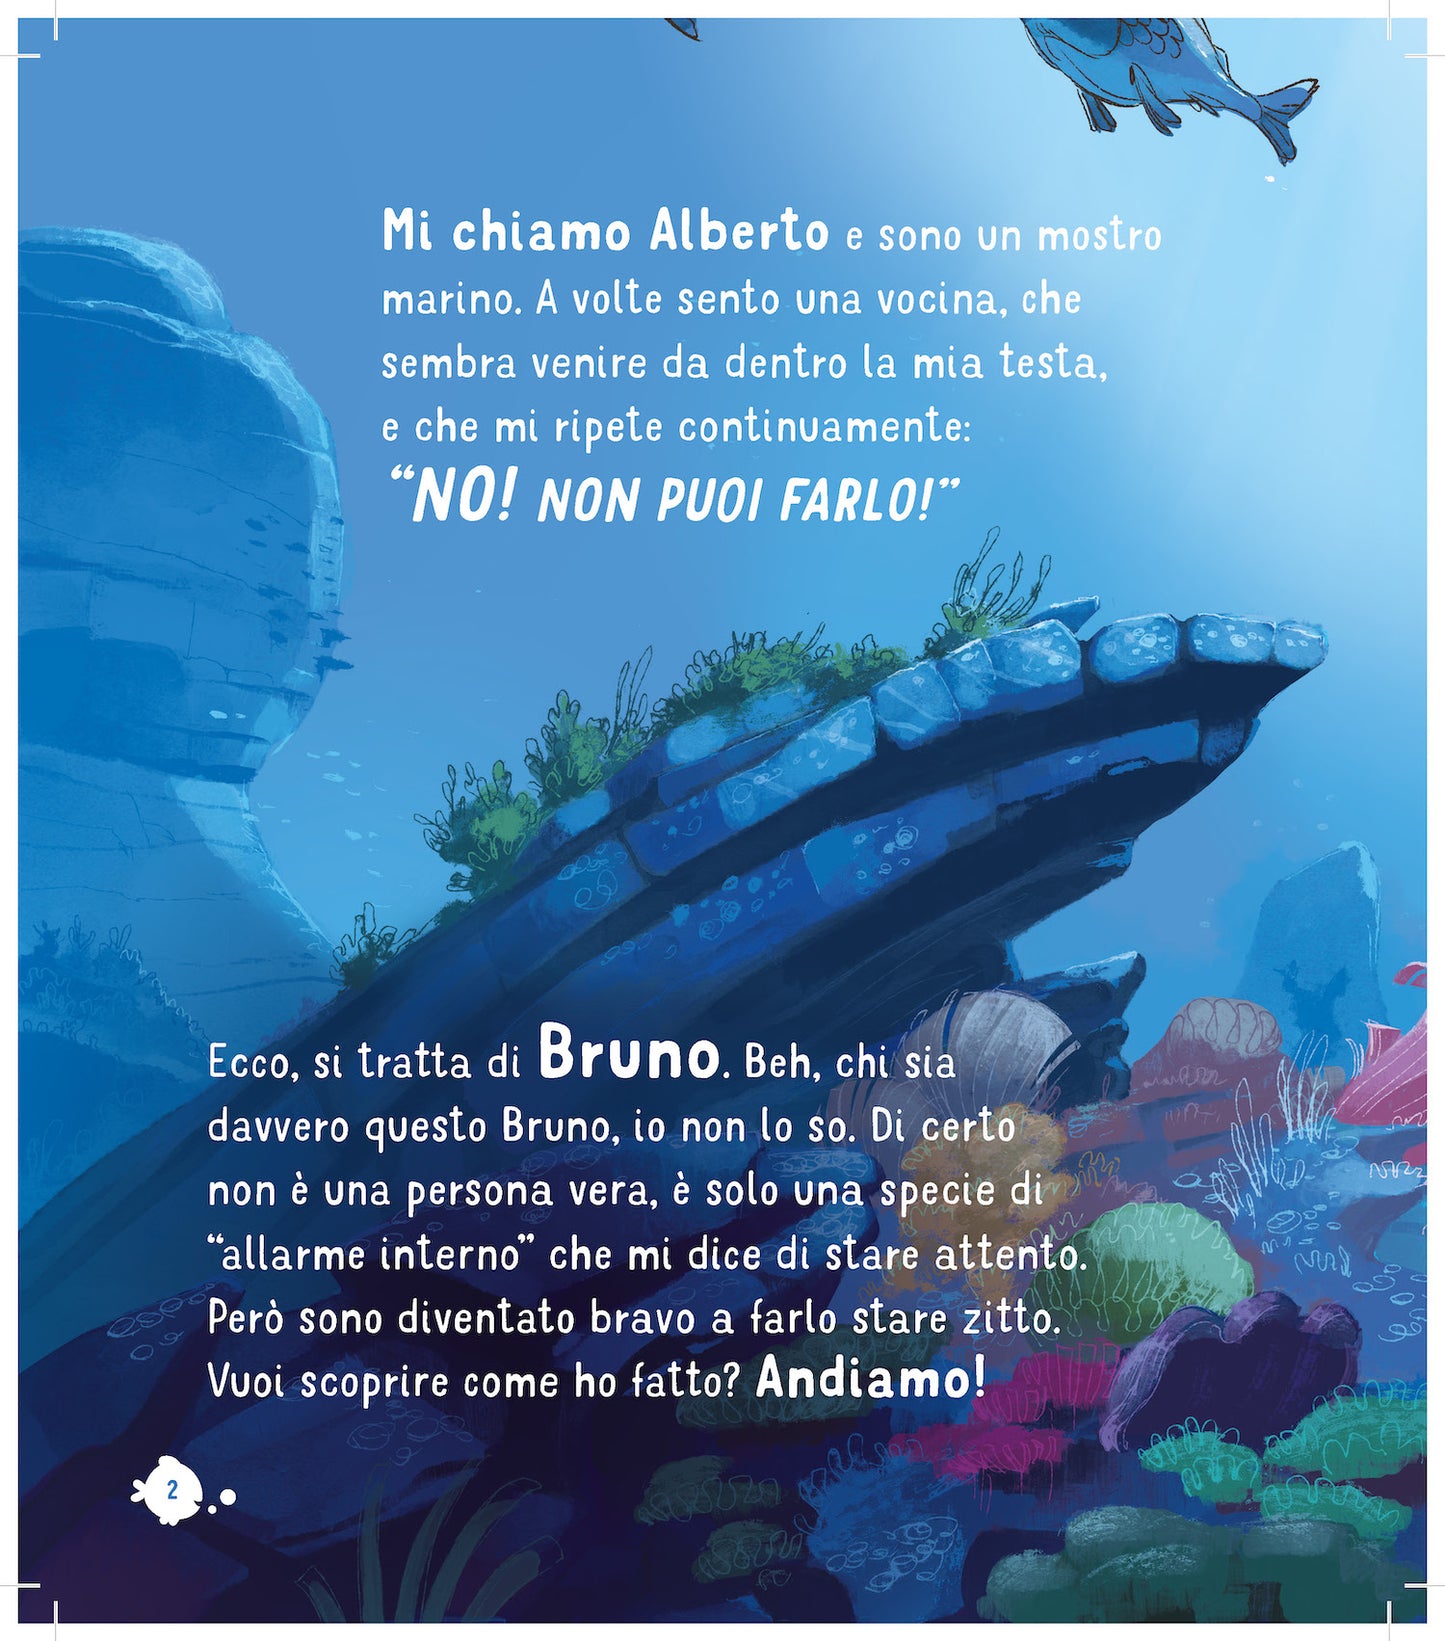 Silenzio Bruno! Luca Disney/Pixar - Le mie prime storie::Dai che ce la fai!